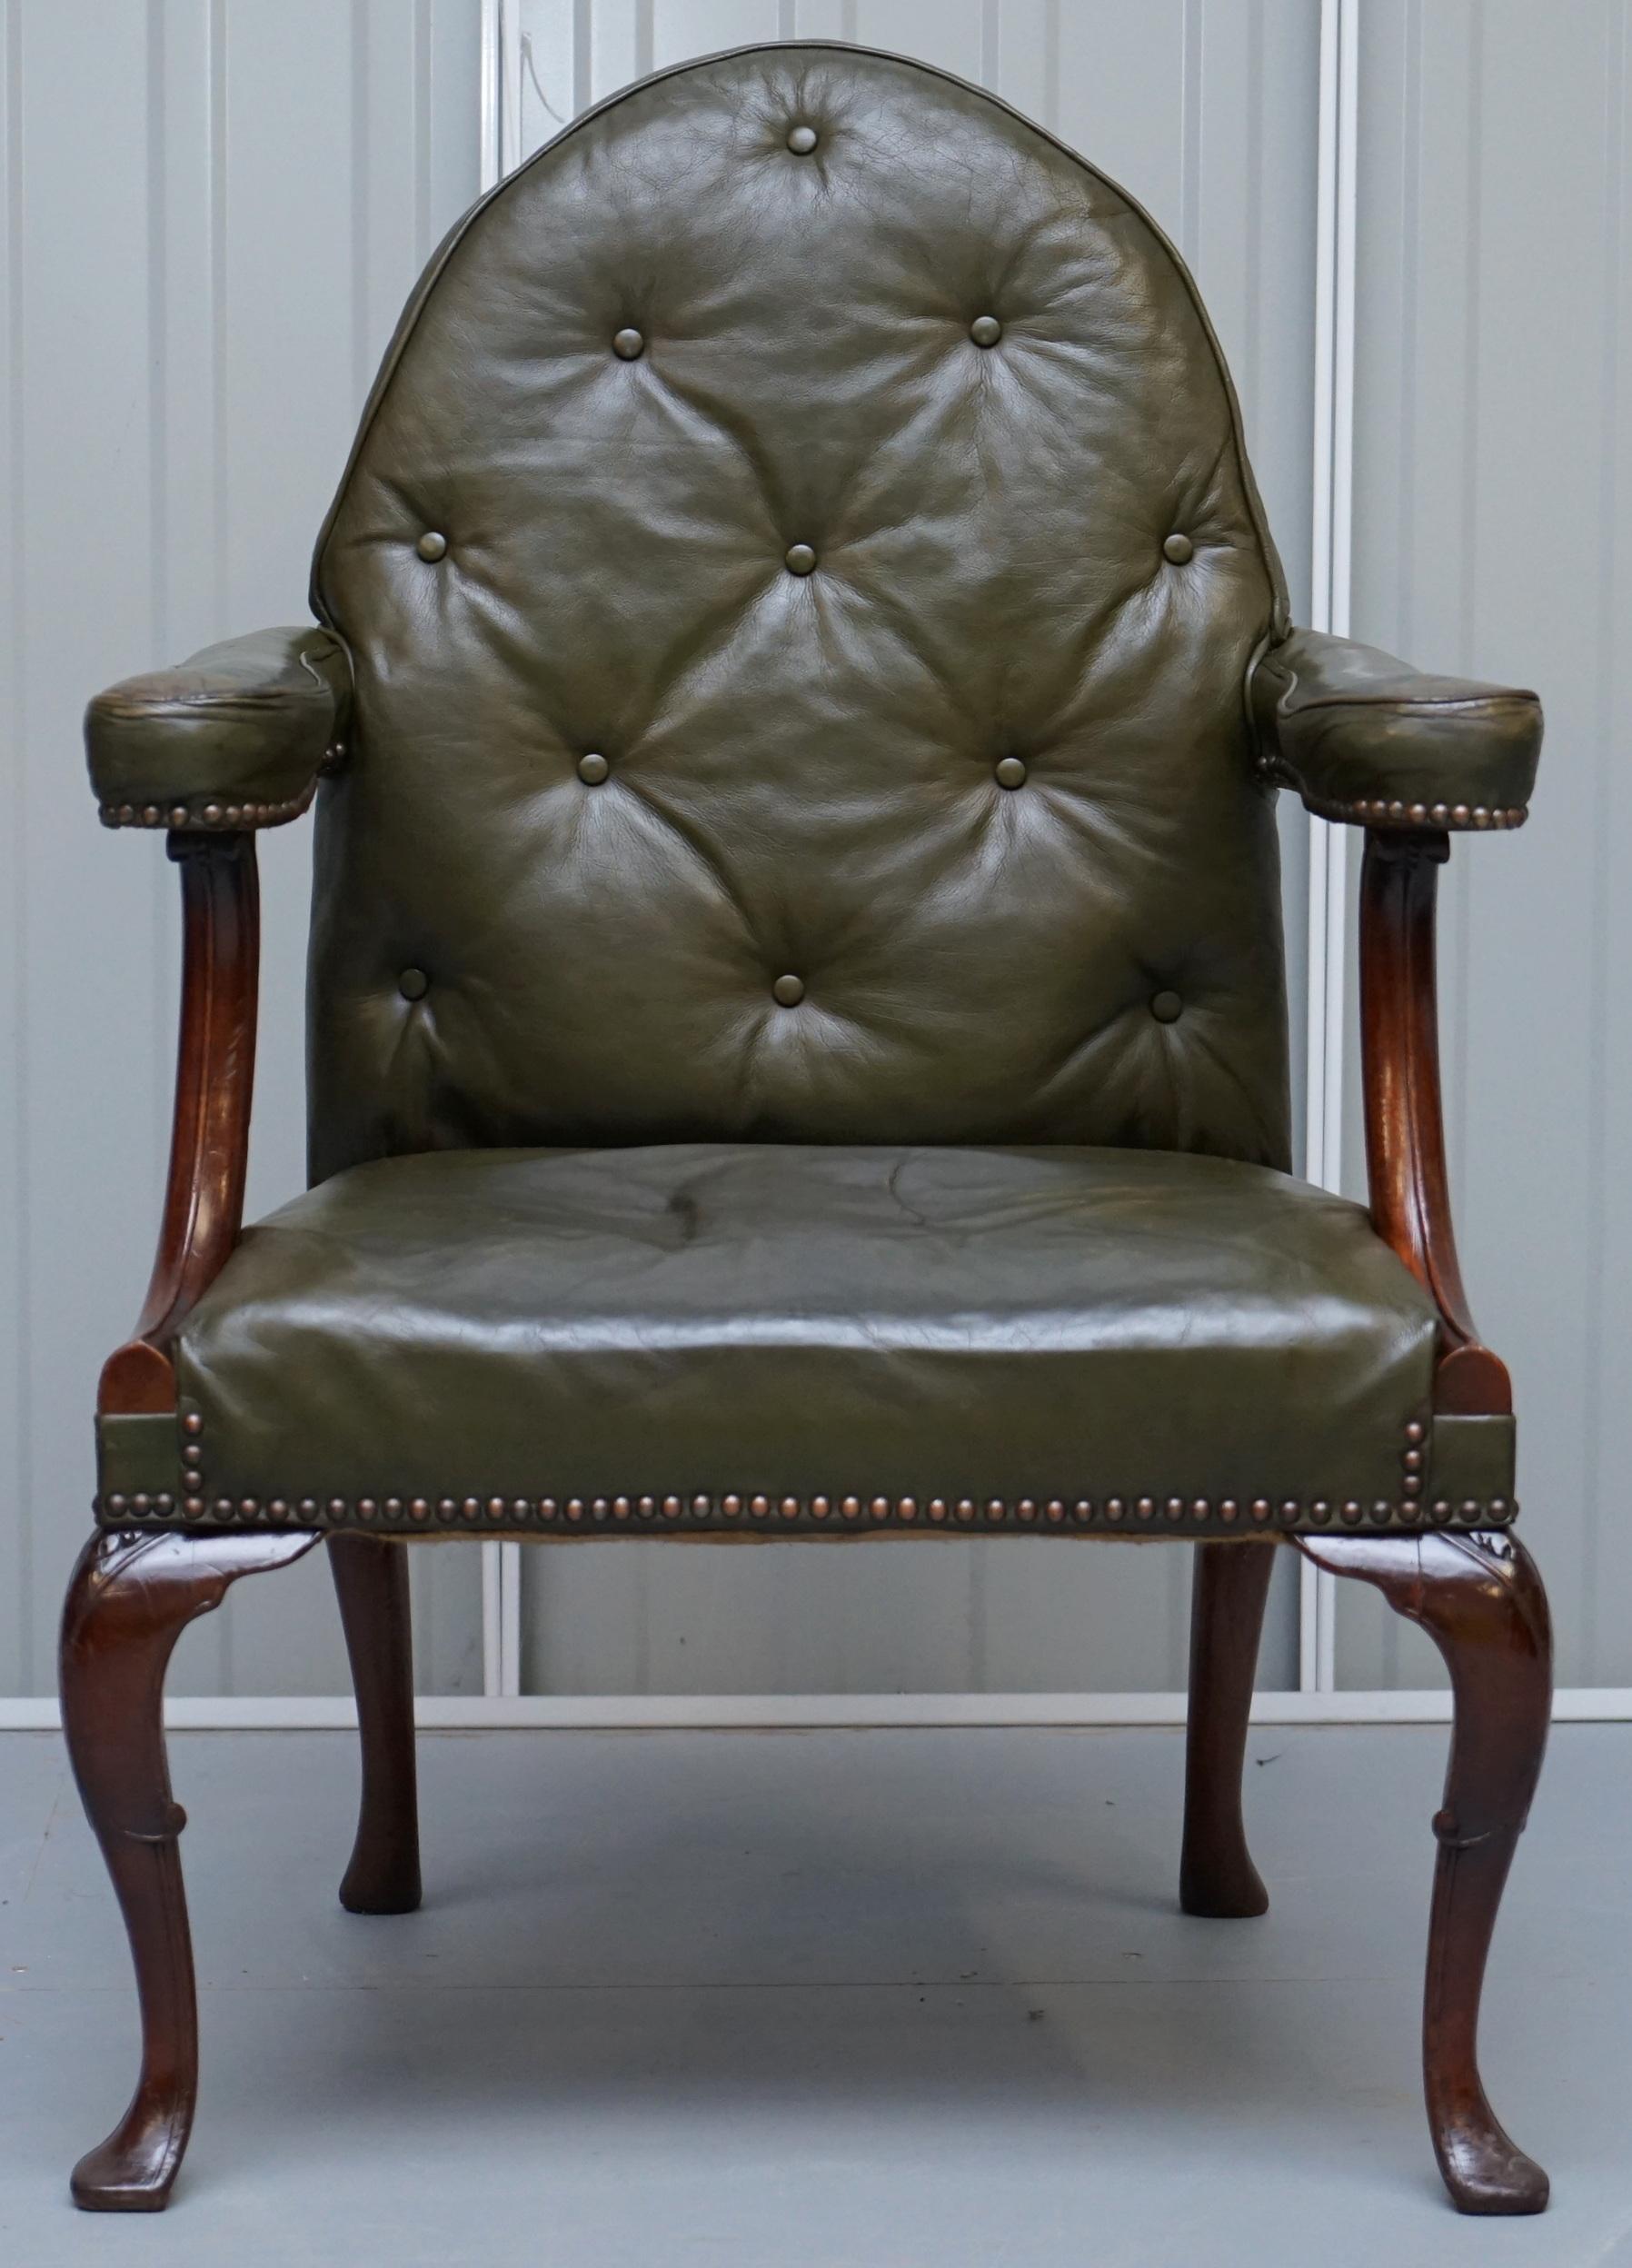 Wir freuen uns, diesen sehr seltenen originalen georgianischen Sessel mit Kirchturmlehne aus der Zeit um 1800 im gotischen Revival zum Verkauf anzubieten

Ein sehr gut aussehender und dekorativer Sessel. Er wurde nach den frühen gotischen